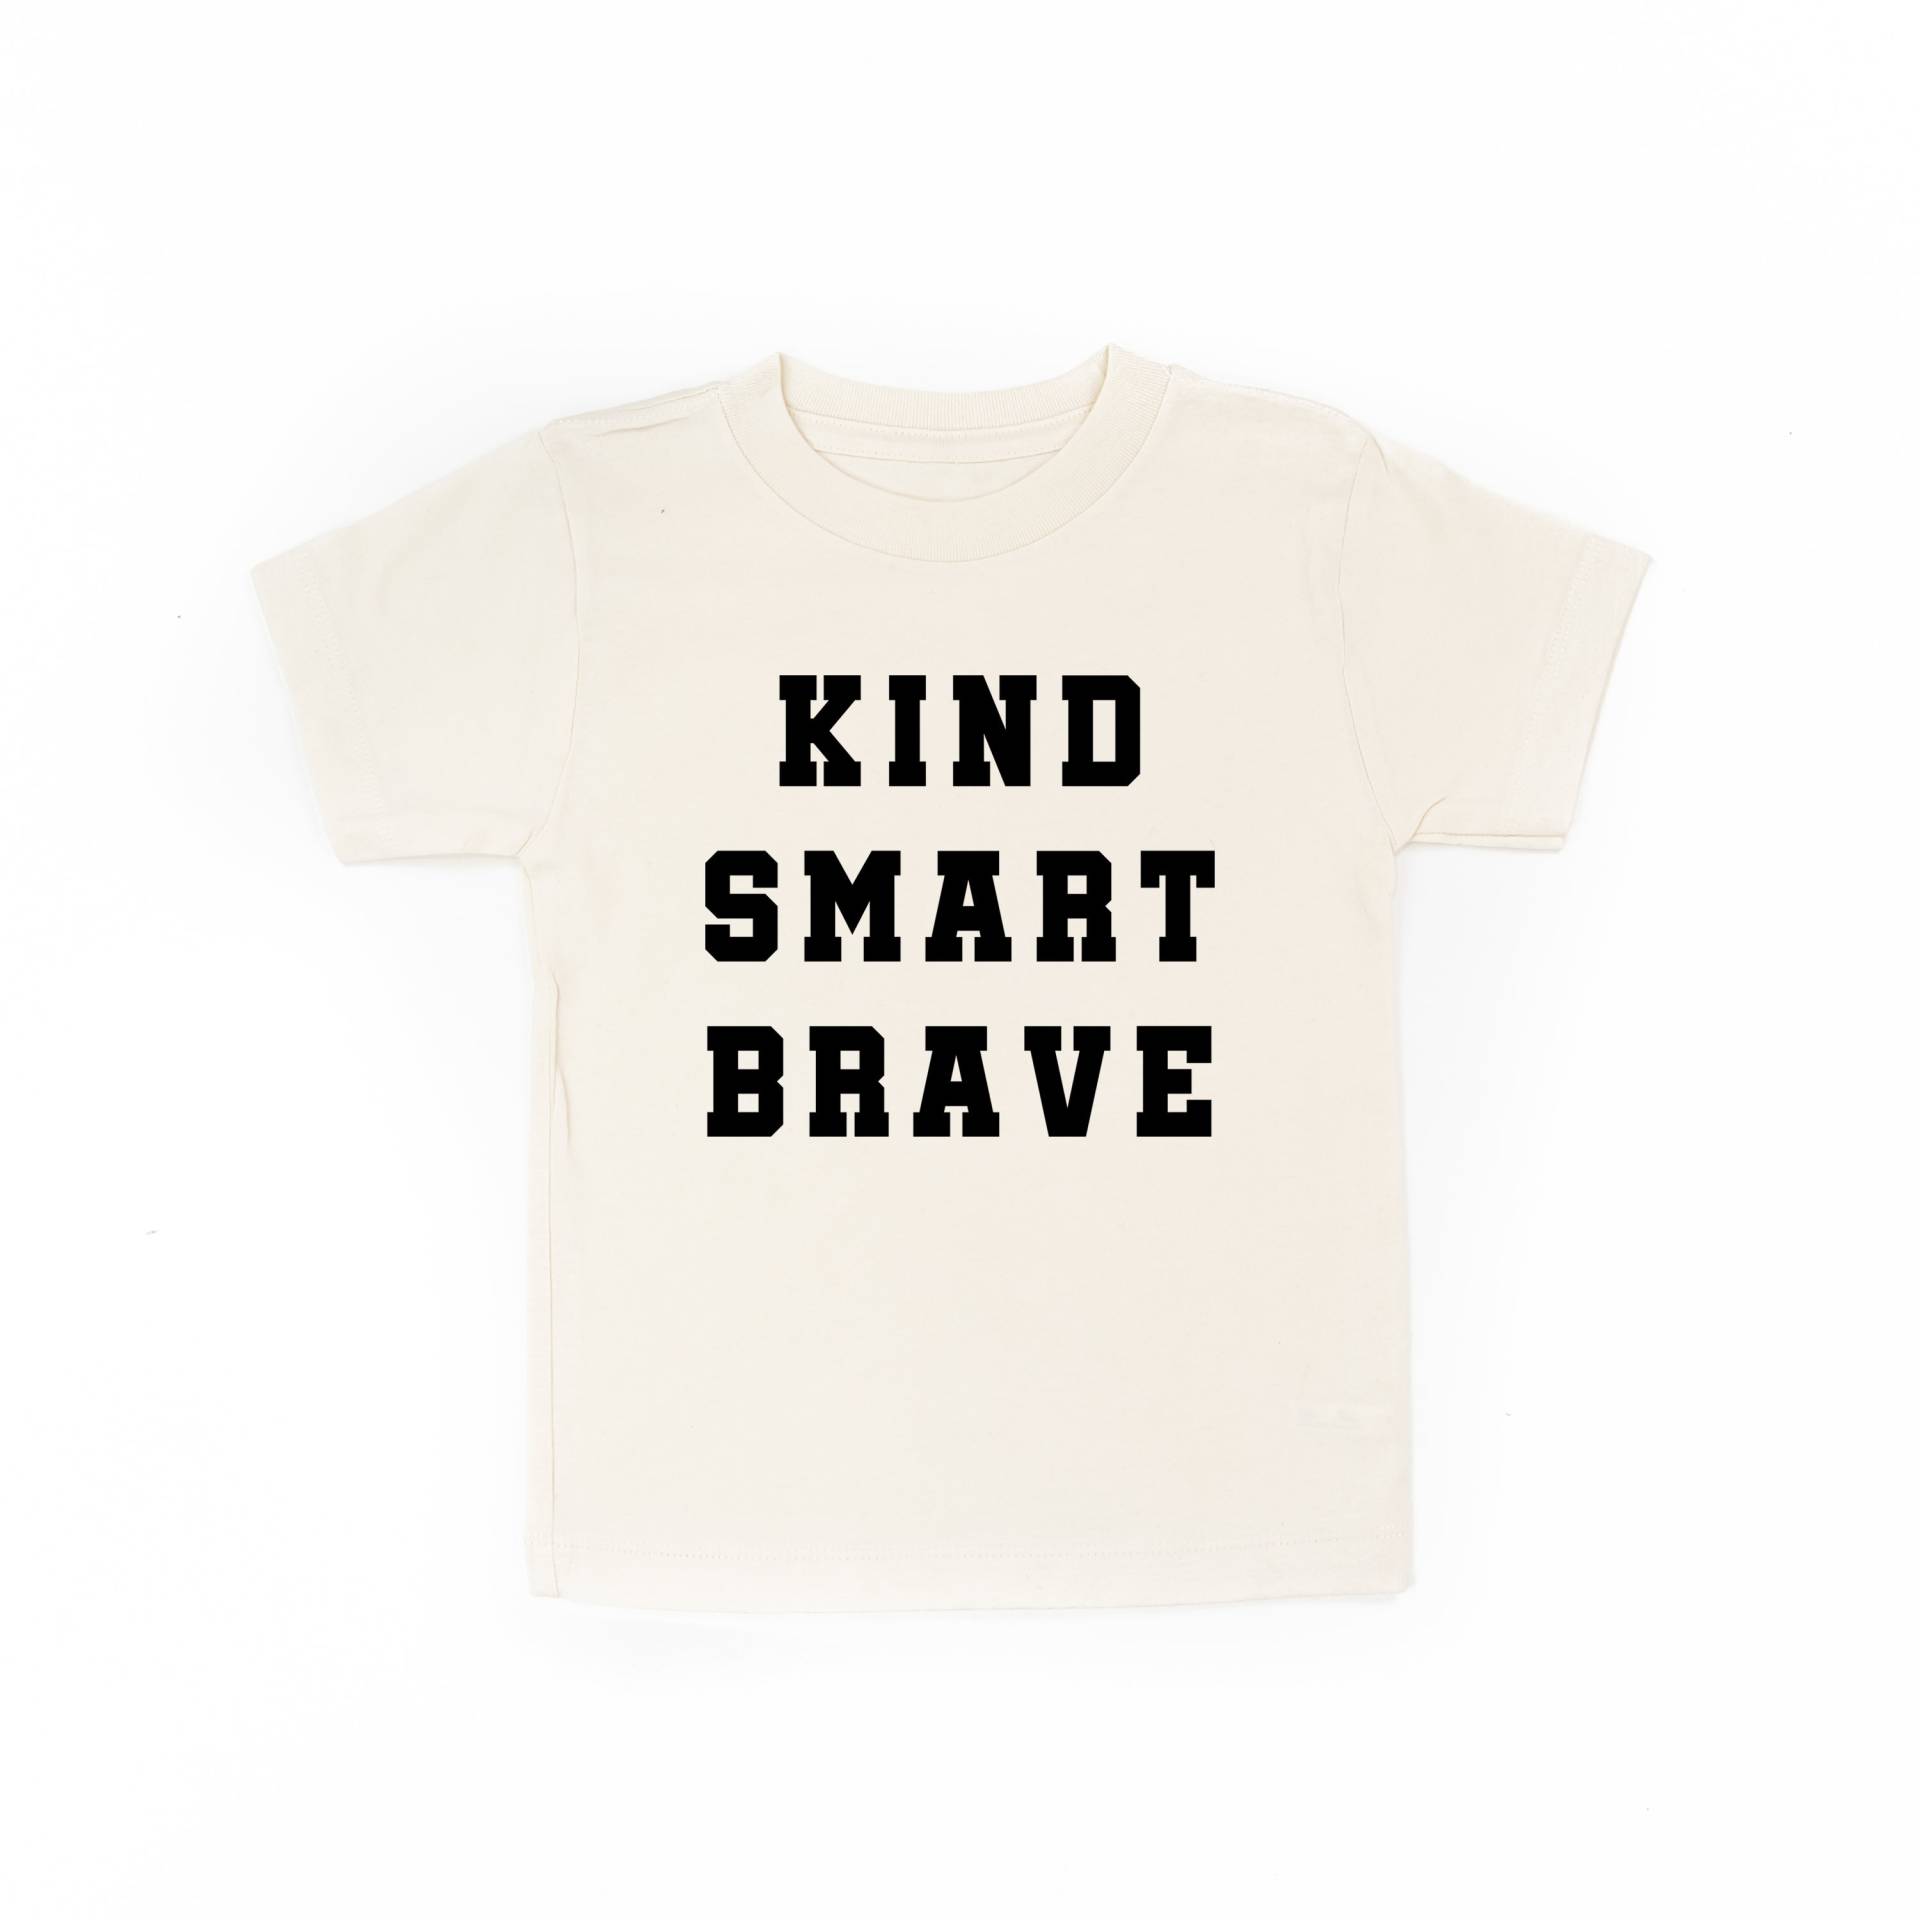 Kind Smart Brave - Varsity Kurzarm Kinder Shirt | Zurück in Die Schule Schulhemden Kid Graphic Tees T-Shirts Für Gute Laune von LittleMamaShirtShop